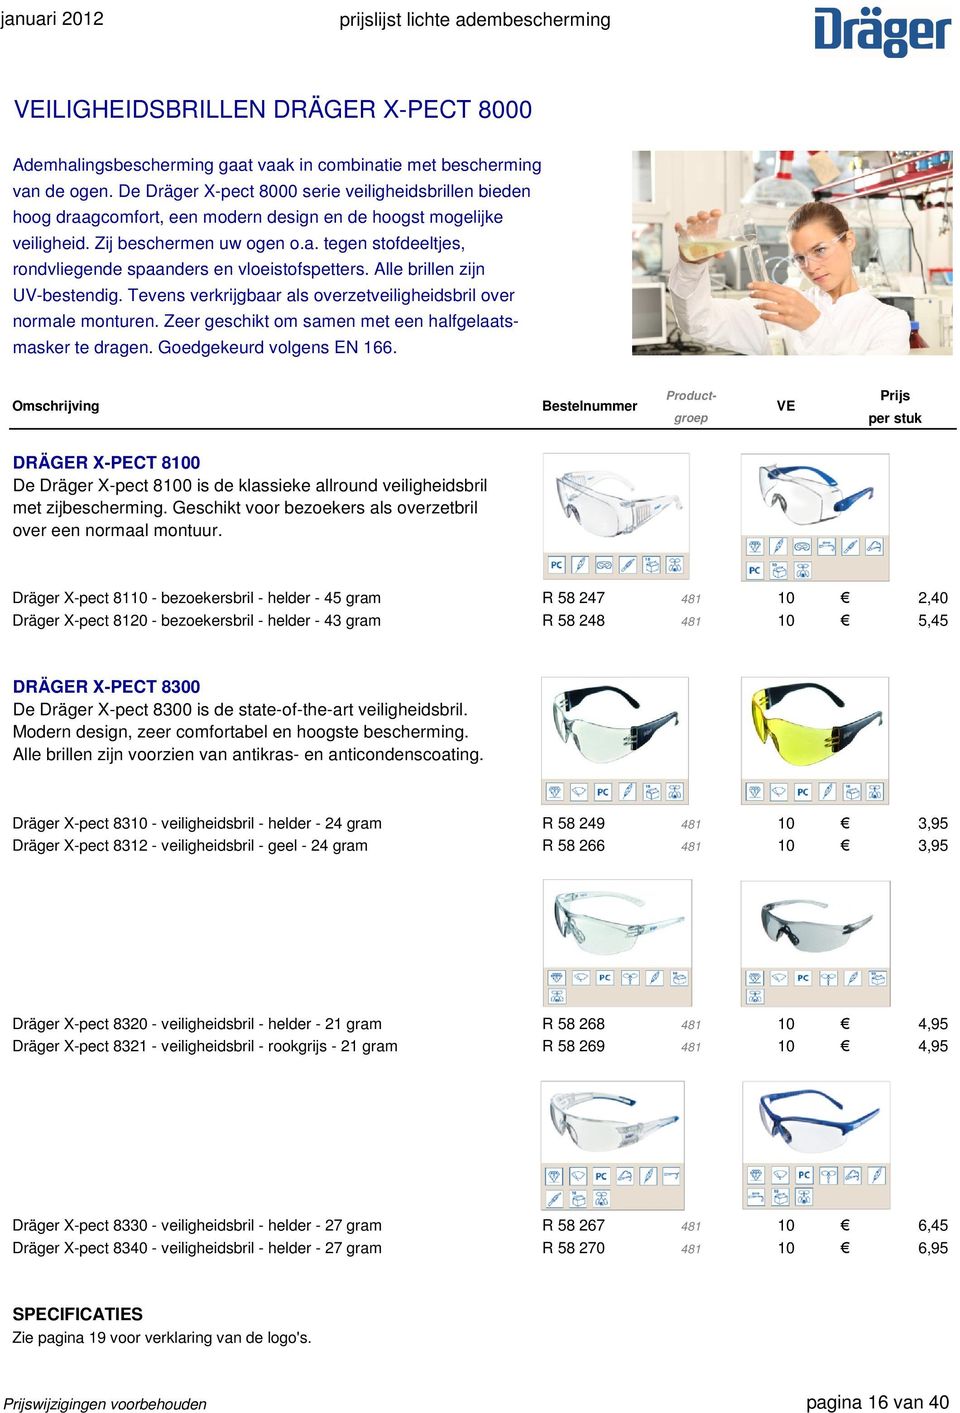 Alle brillen zijn UV-bestendig. Tevens verkrijgbaar als overzetveiligheidsbril over normale monturen. Zeer geschikt om samen met een halfgelaatsmasker te dragen. Goedgekeurd volgens EN 166.